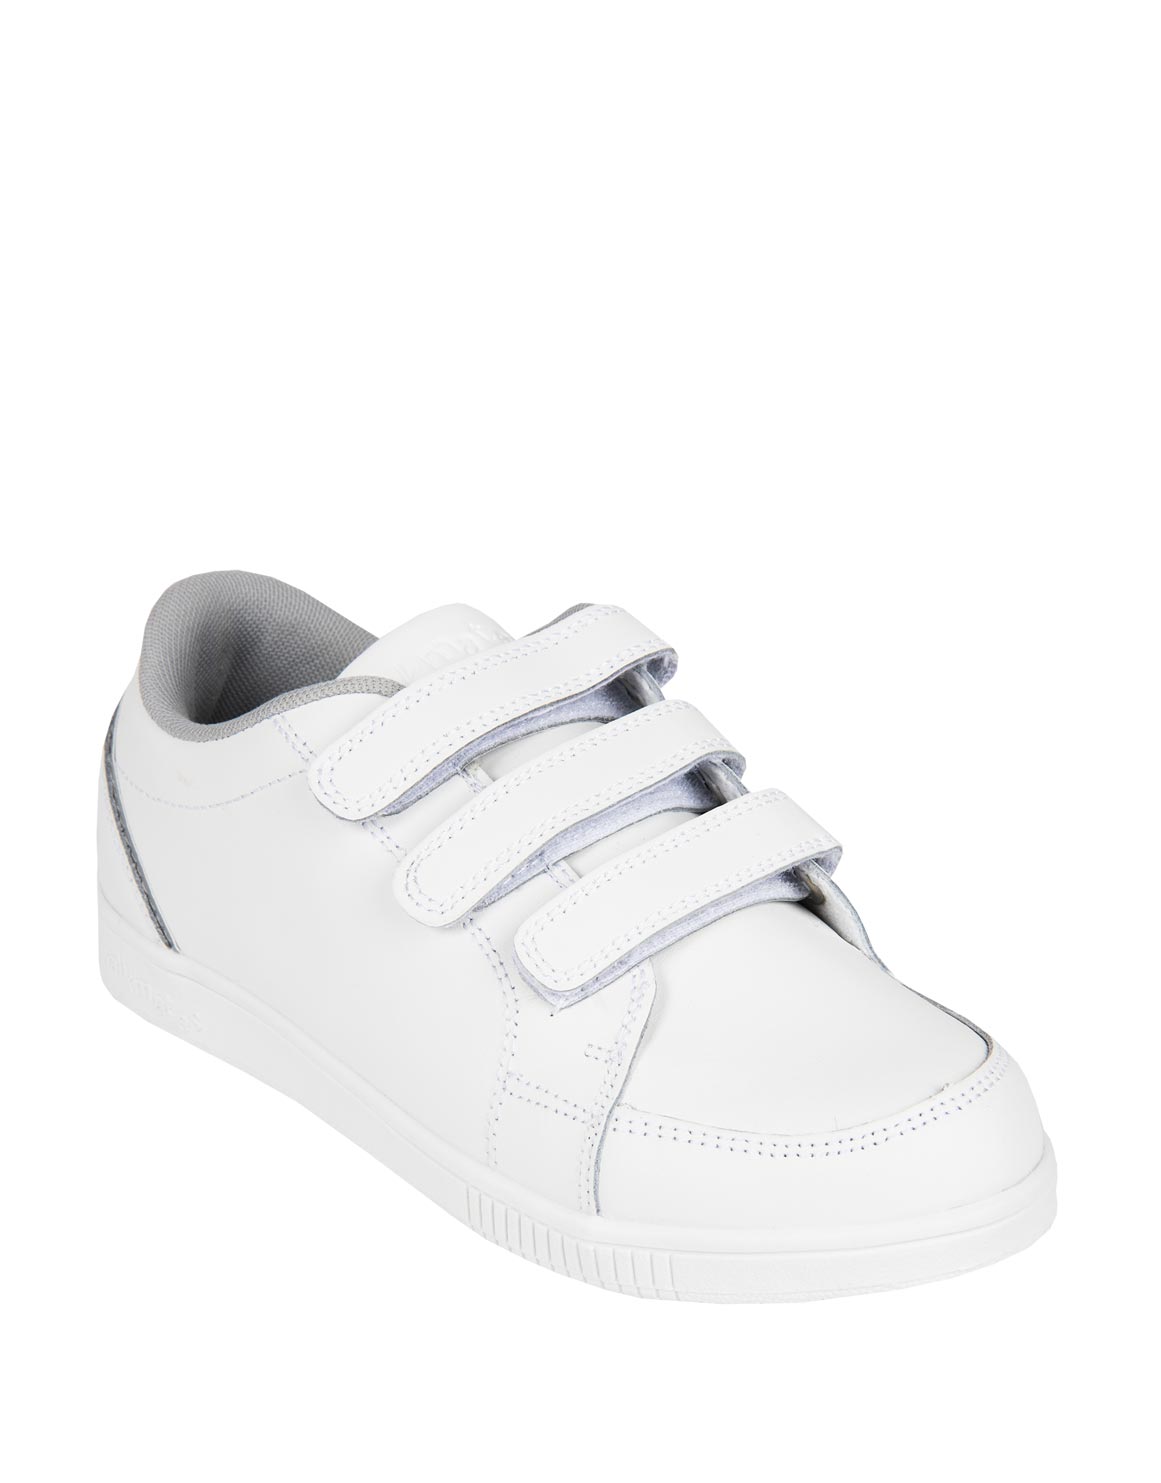 [ベスト] walkmates girls woolworths shoes for kids 341879 - Gambarturahthq